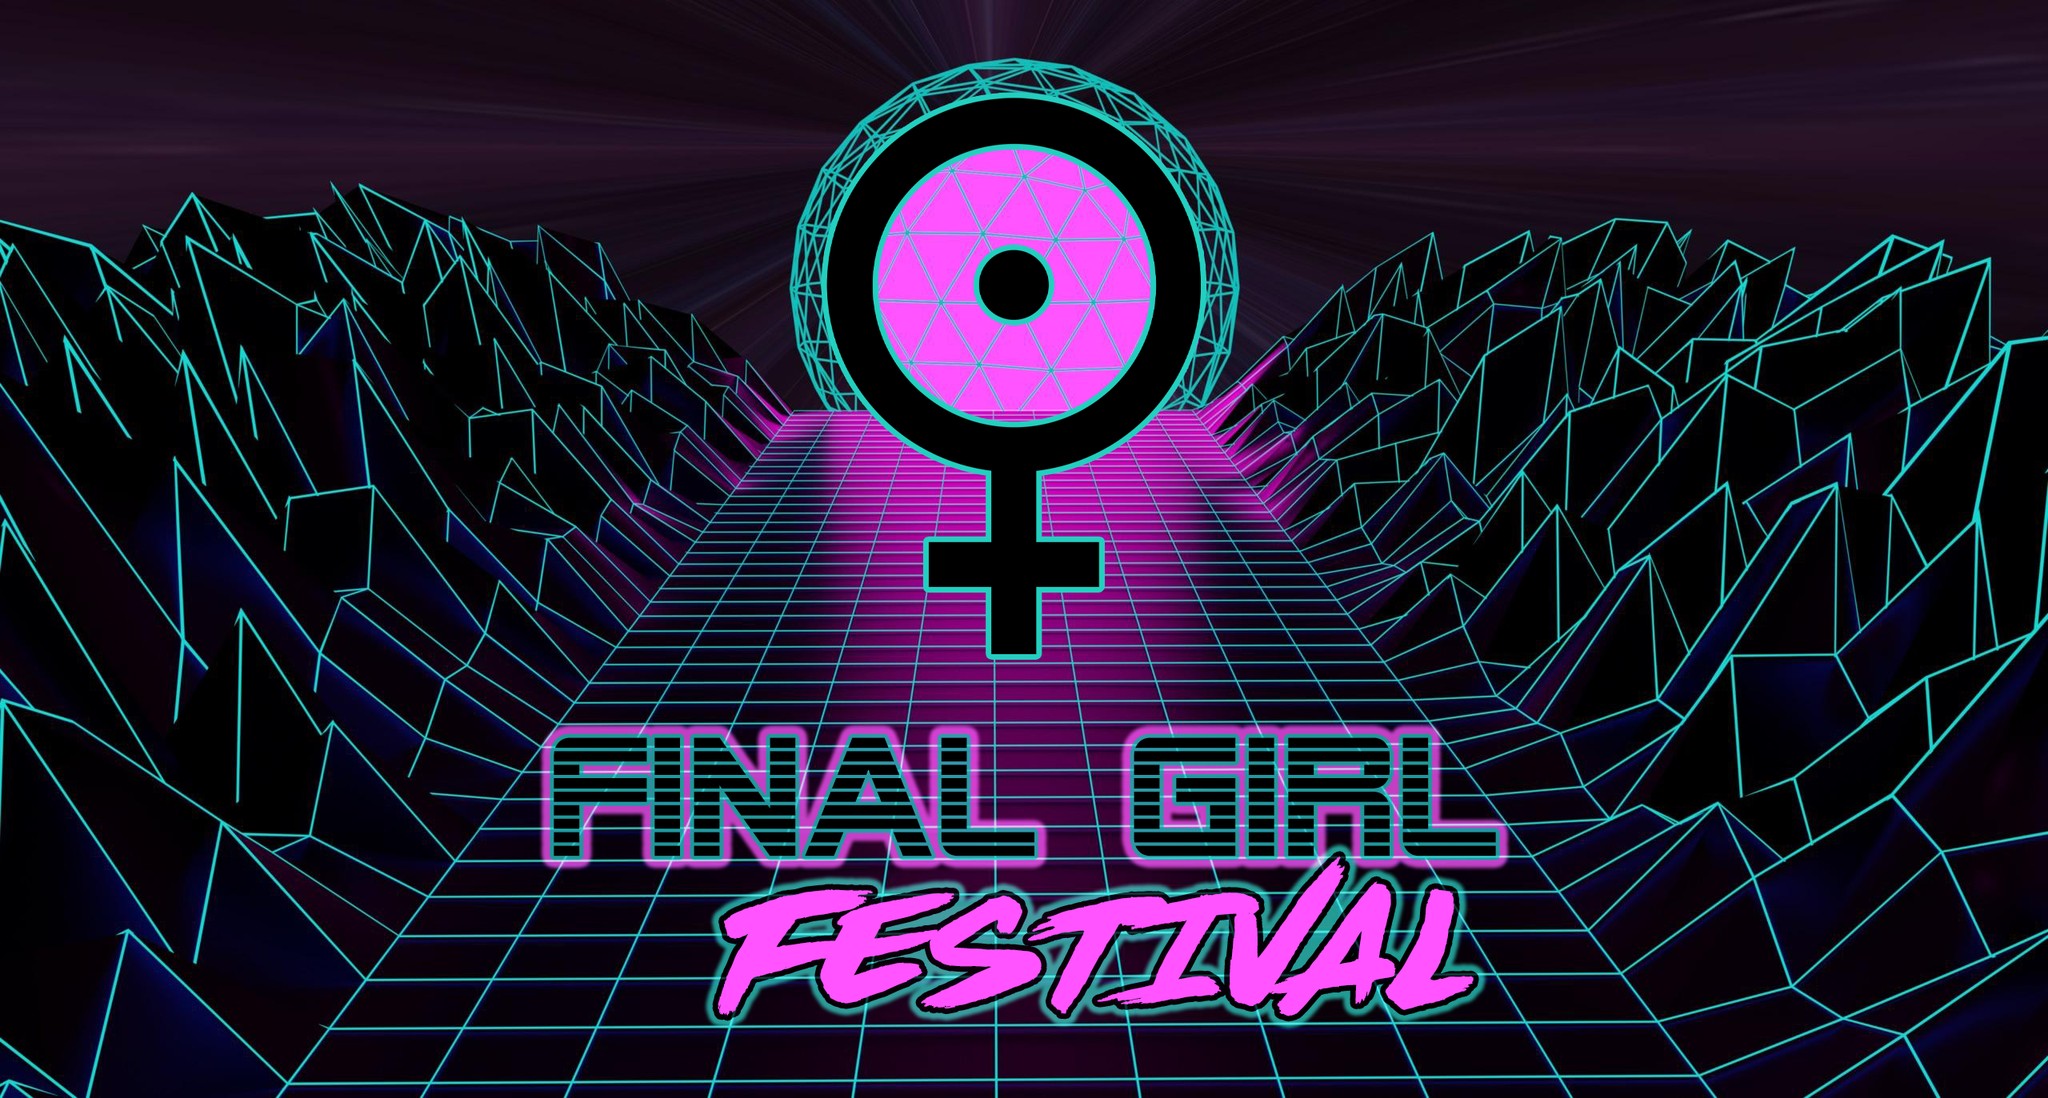 Final Girl Festival